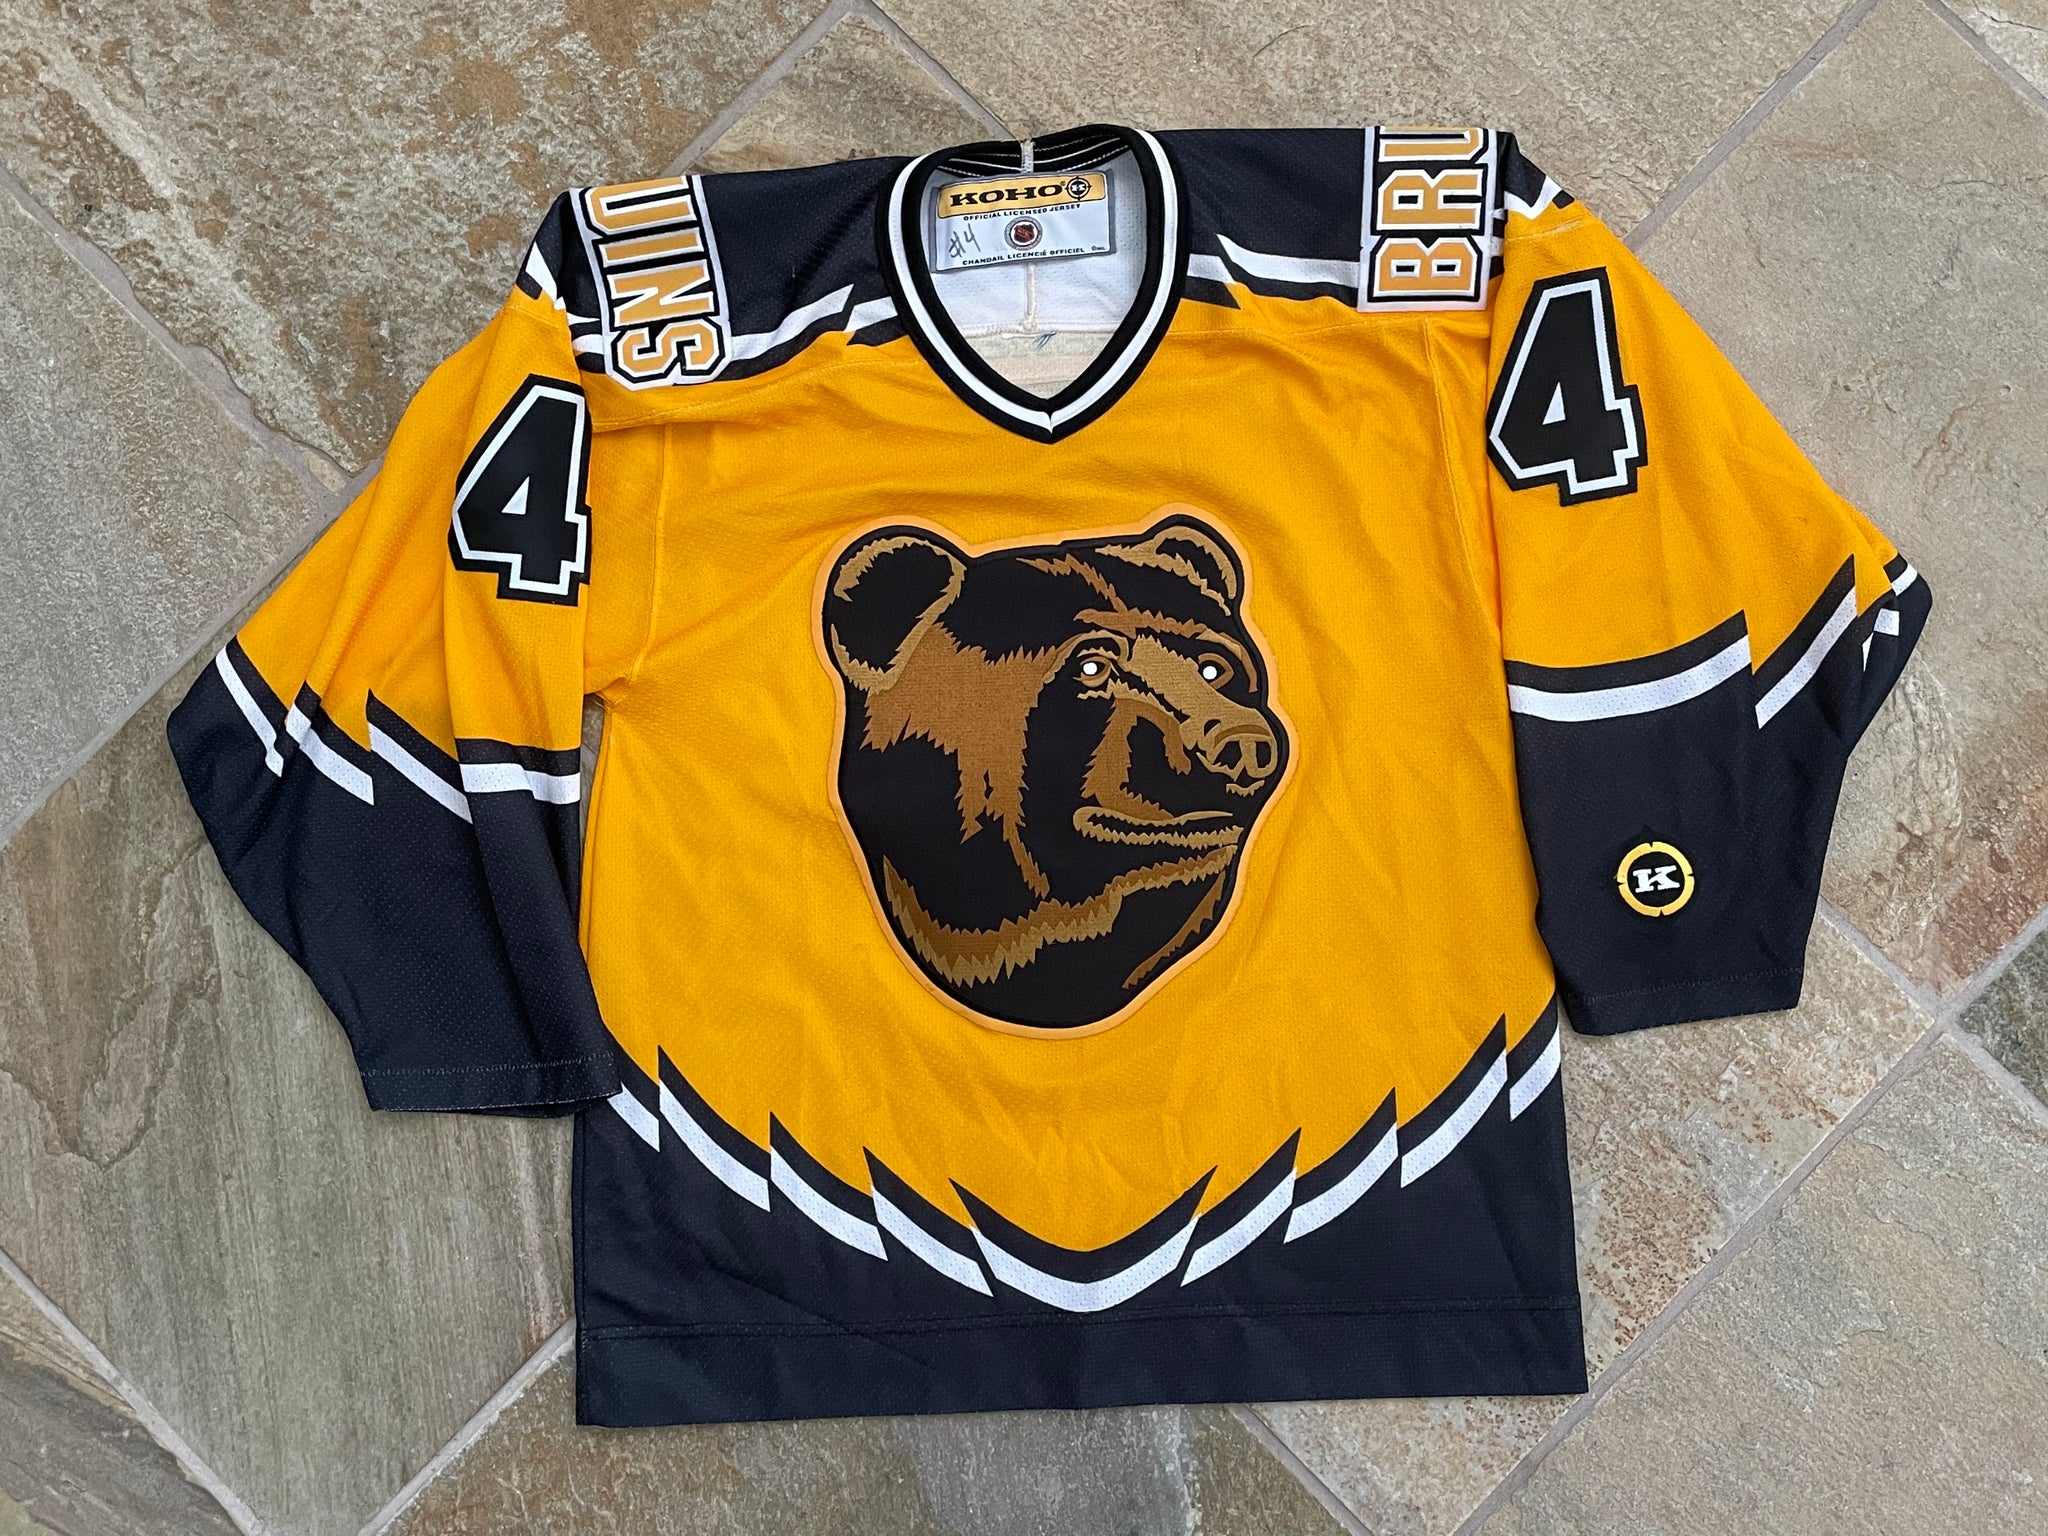 Pooh Bear Jersey 